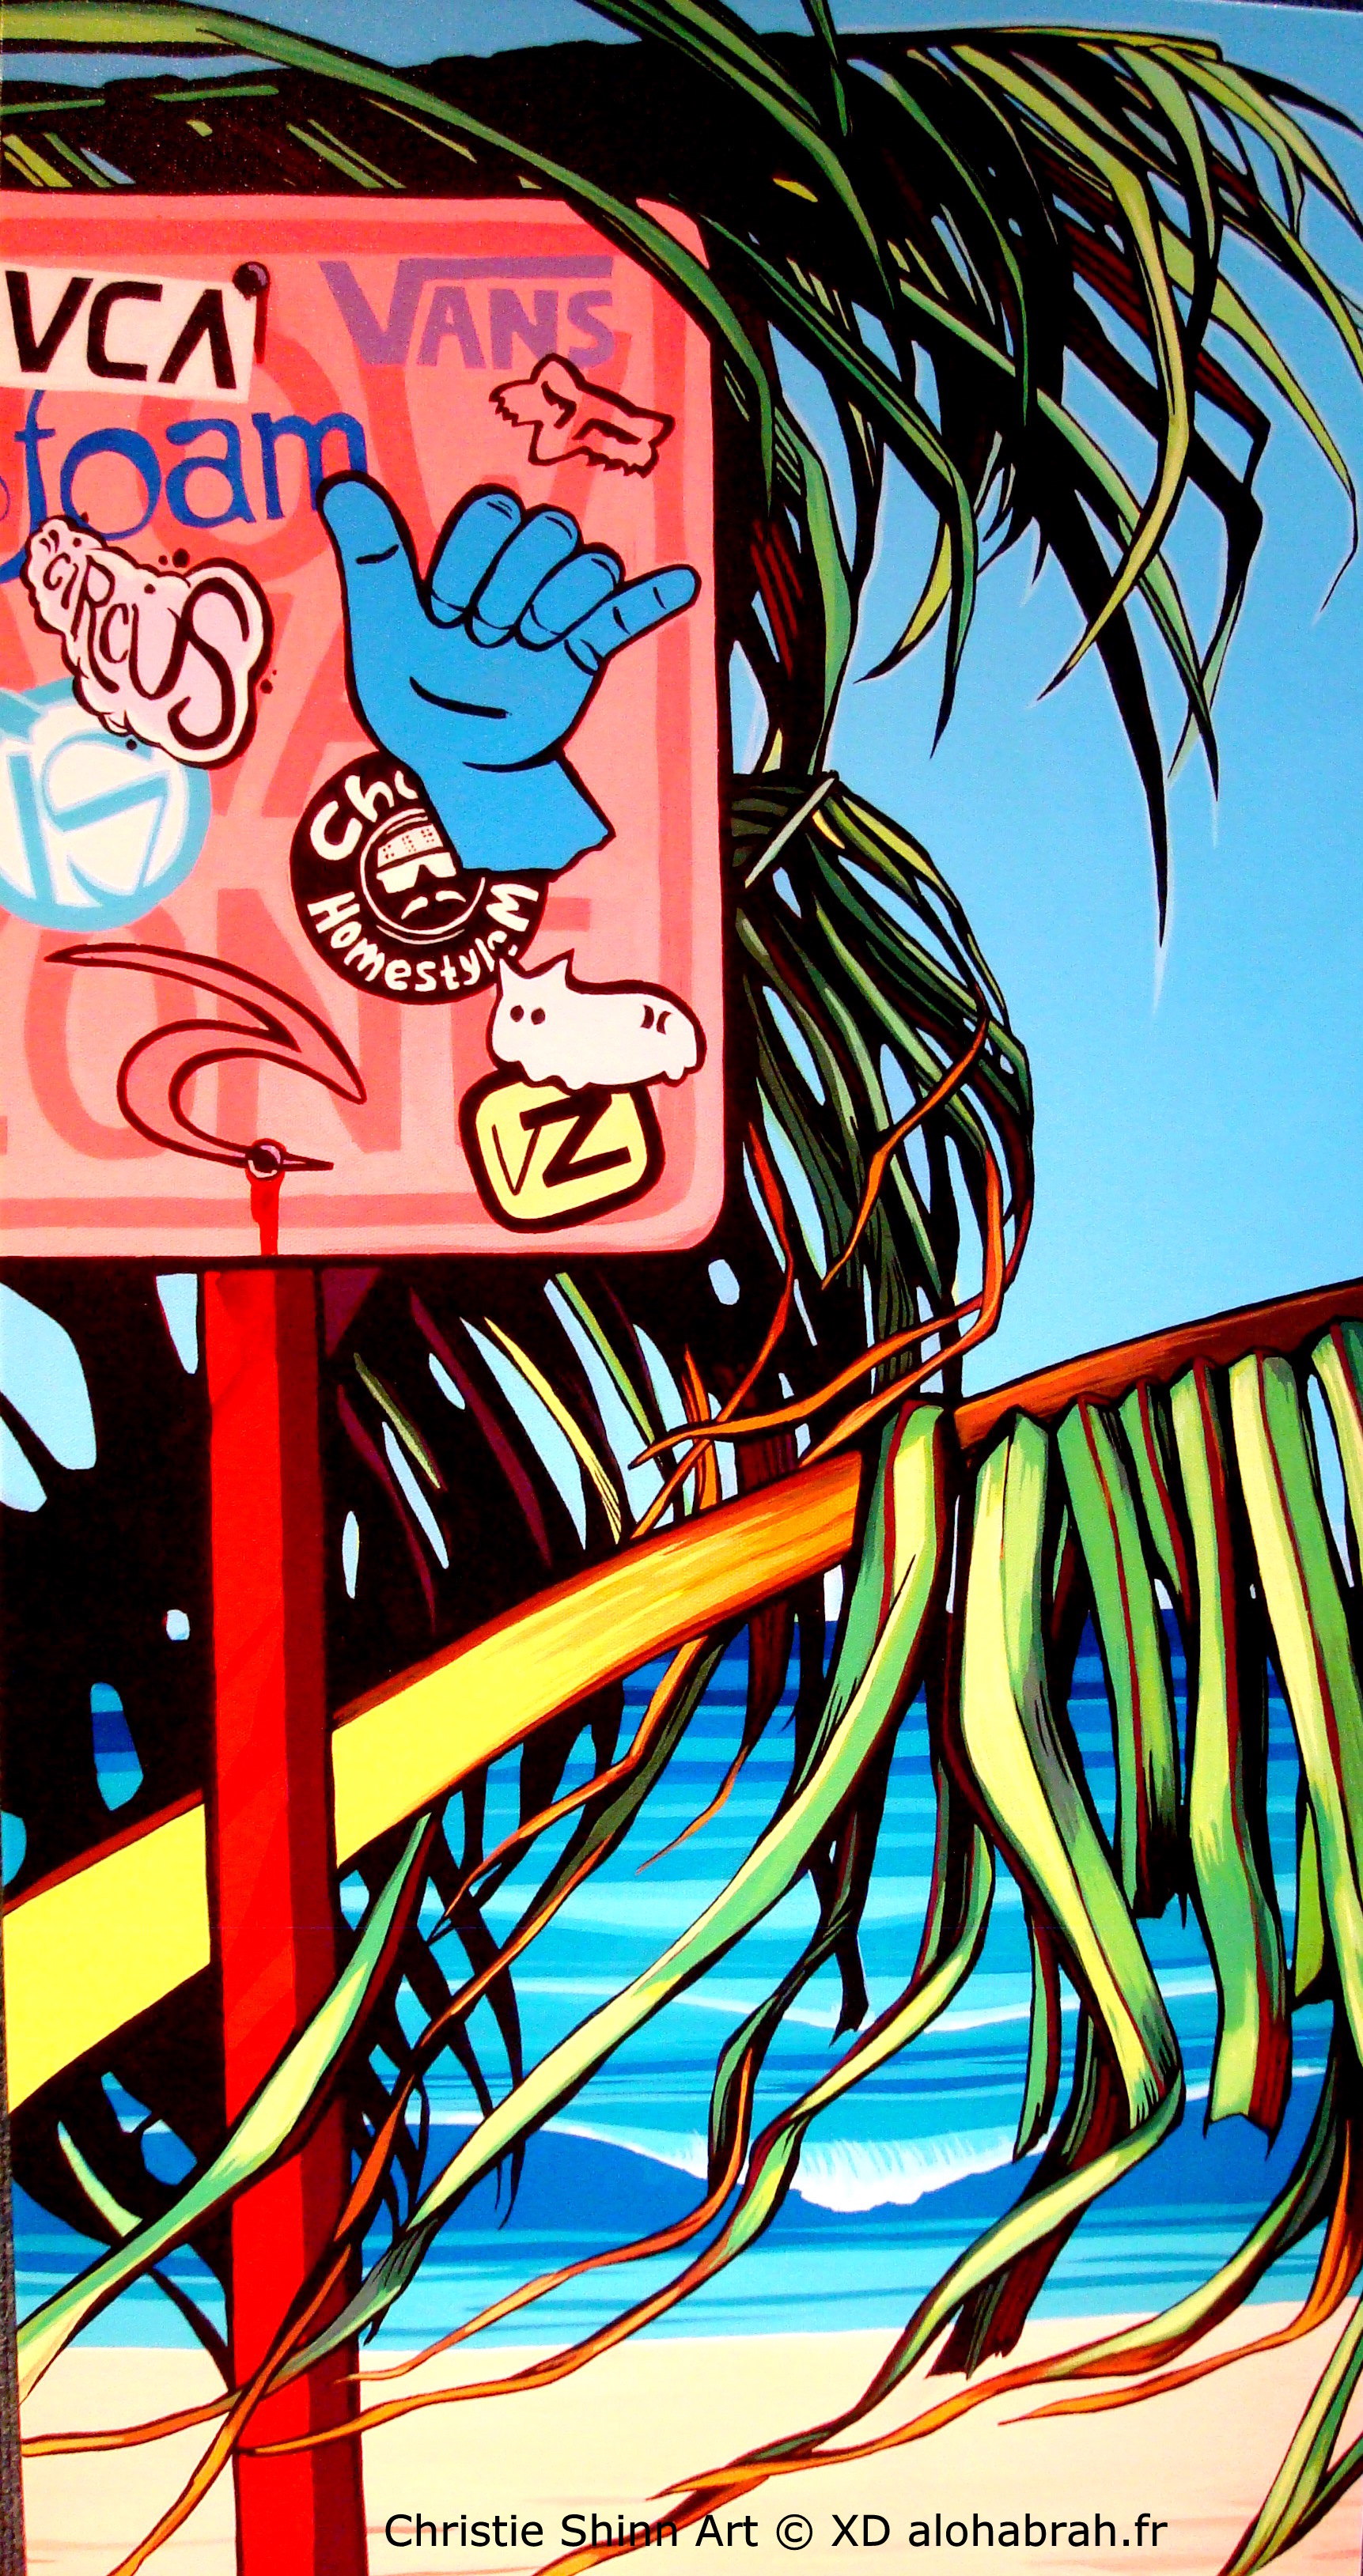 Christie Shinn Art - Beach Access © XD alohabrah.fr